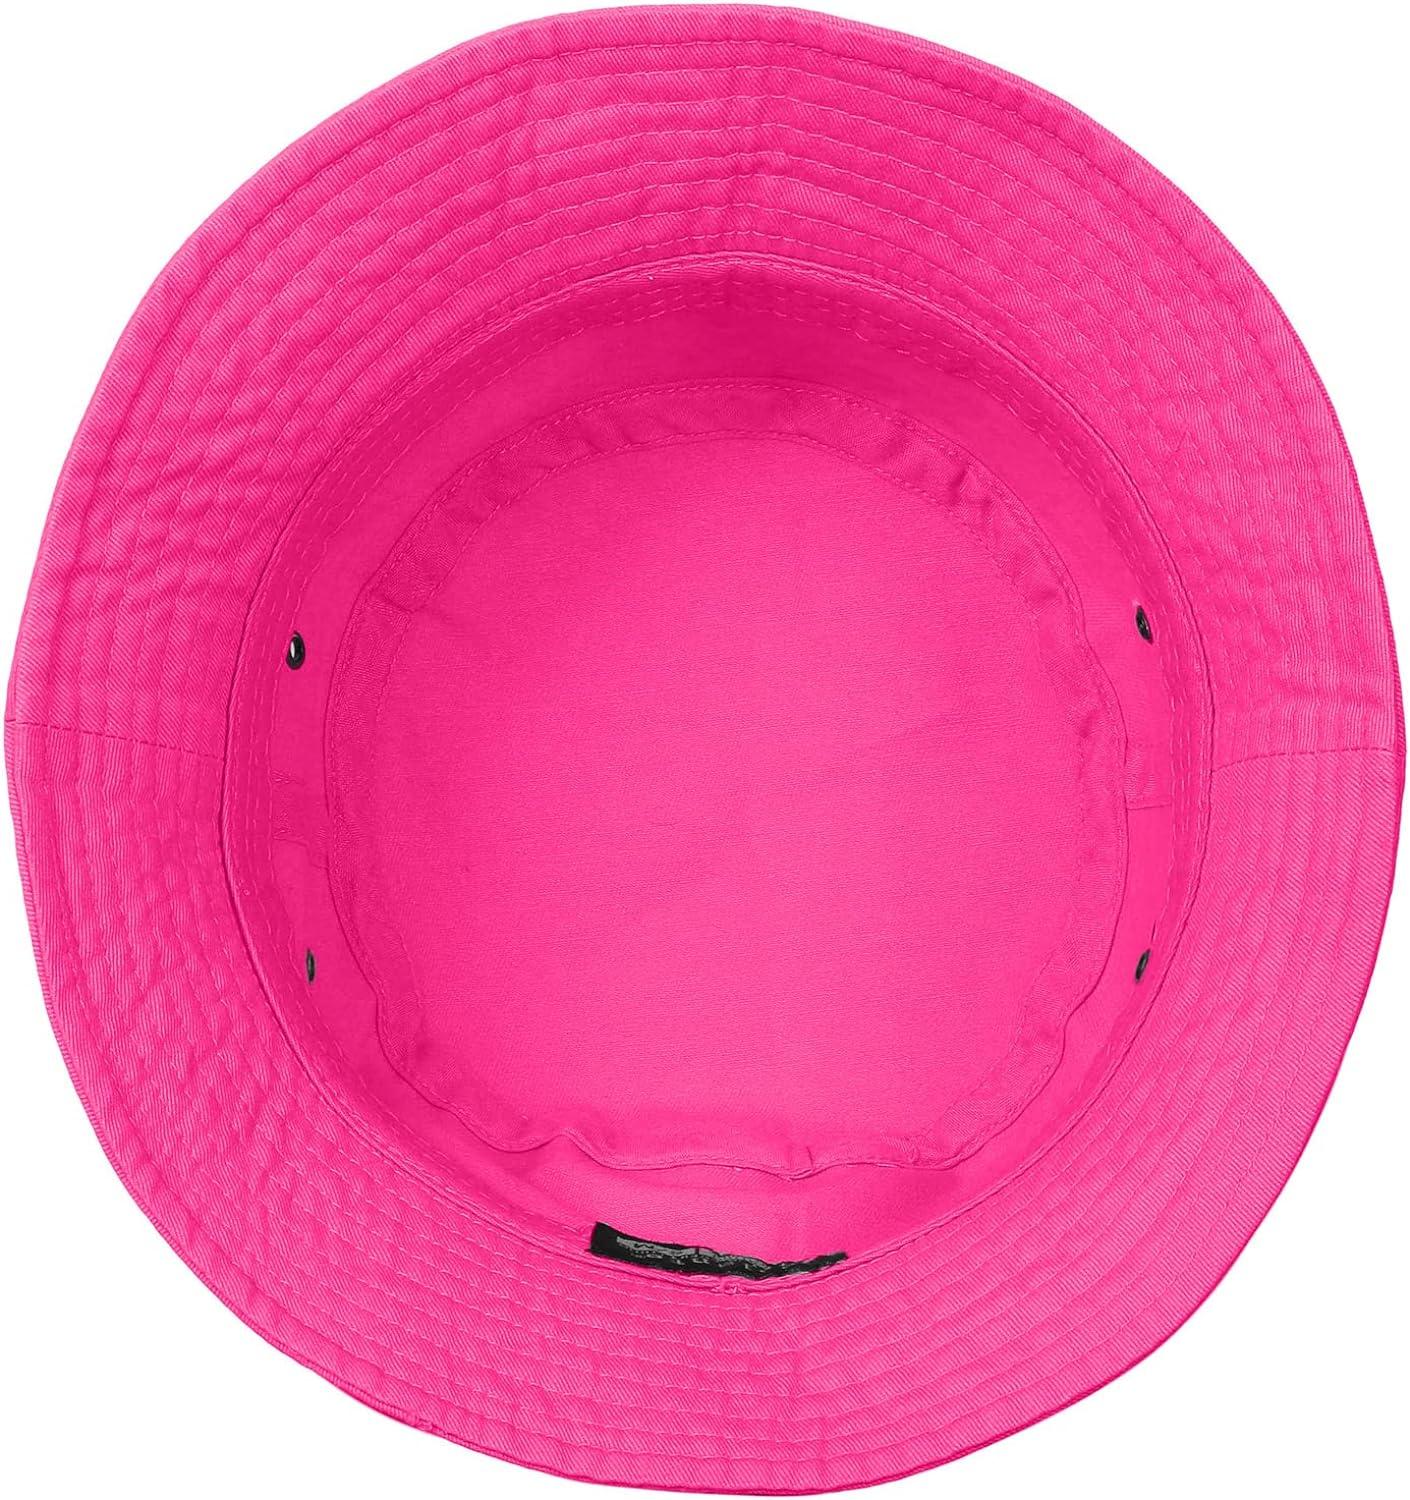 Falari Men Women Unisex Cotton Bucket Hat 100% Cotton Packable for